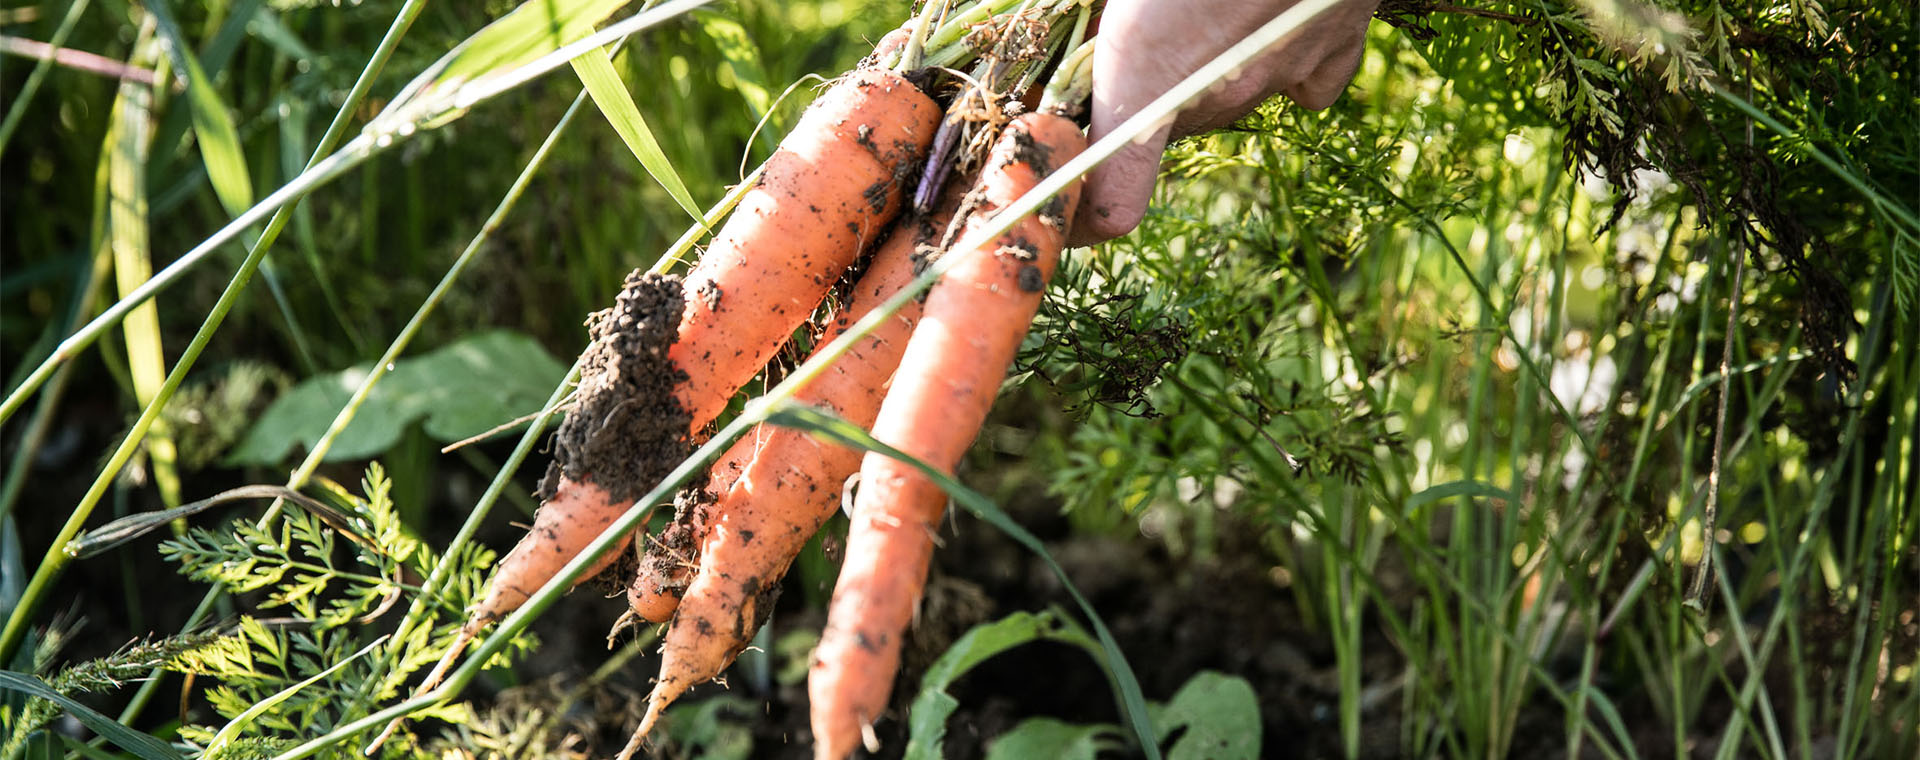 Karotten werden aus der Erde gezogen